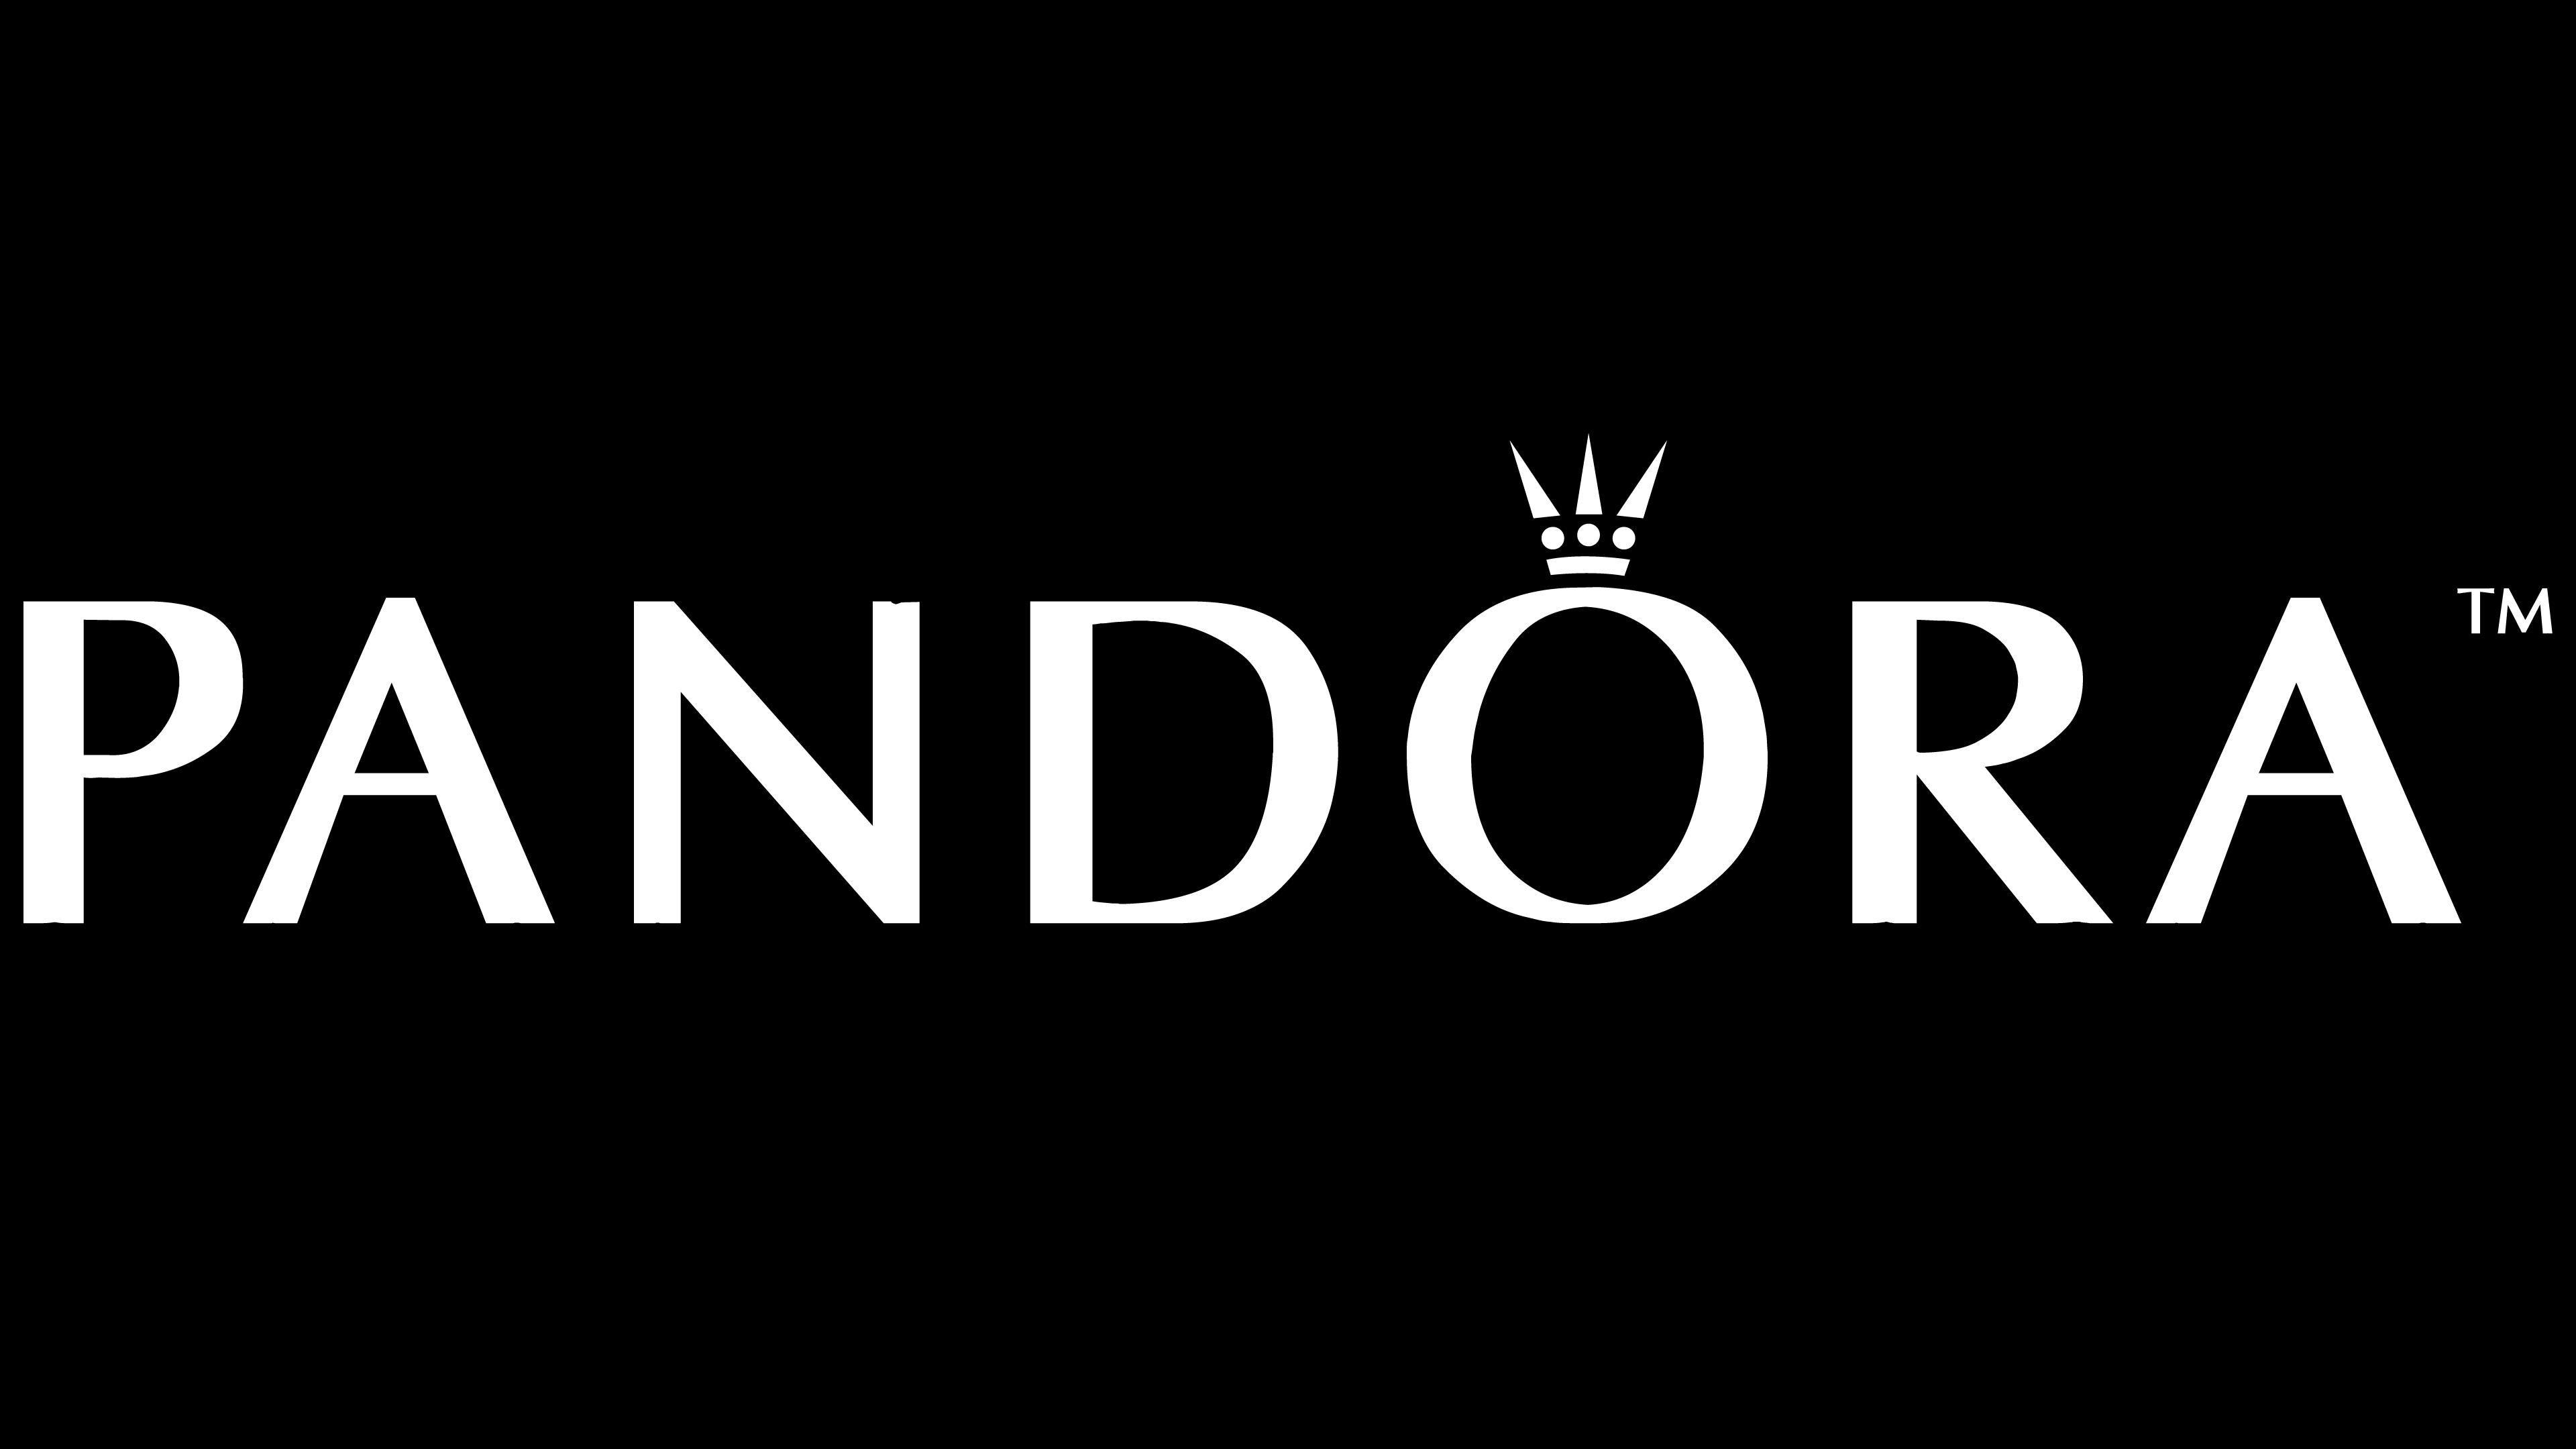 Pandora Logo PNG Image in Transparent pngteam.com